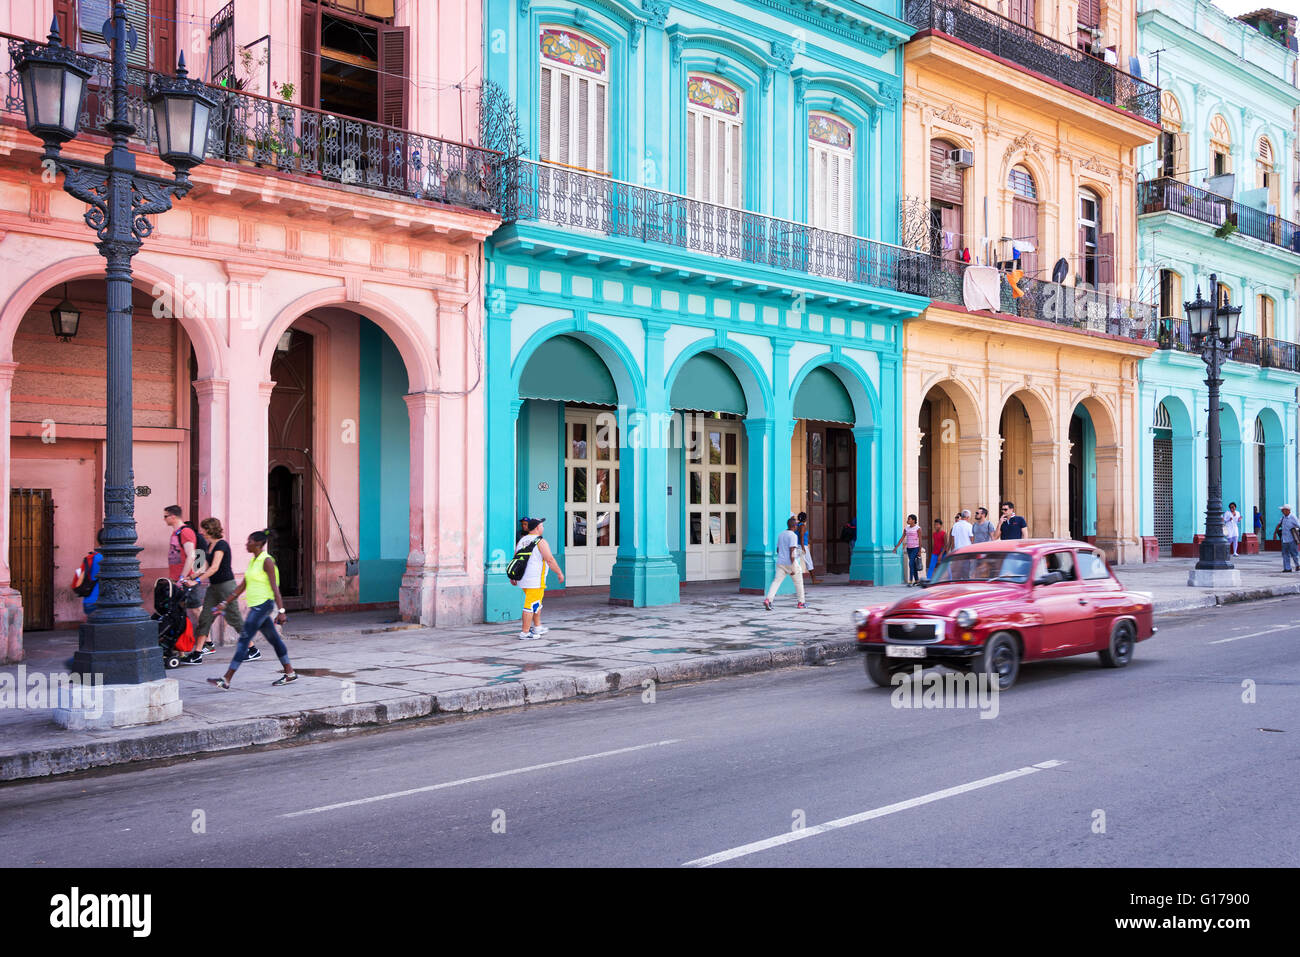 L'Avana, Cuba - 18 aprile: Classic vintage auto e colorati edifici coloniali nella strada principale di l'Avana Vecchia, il 18 aprile 2016 Foto Stock